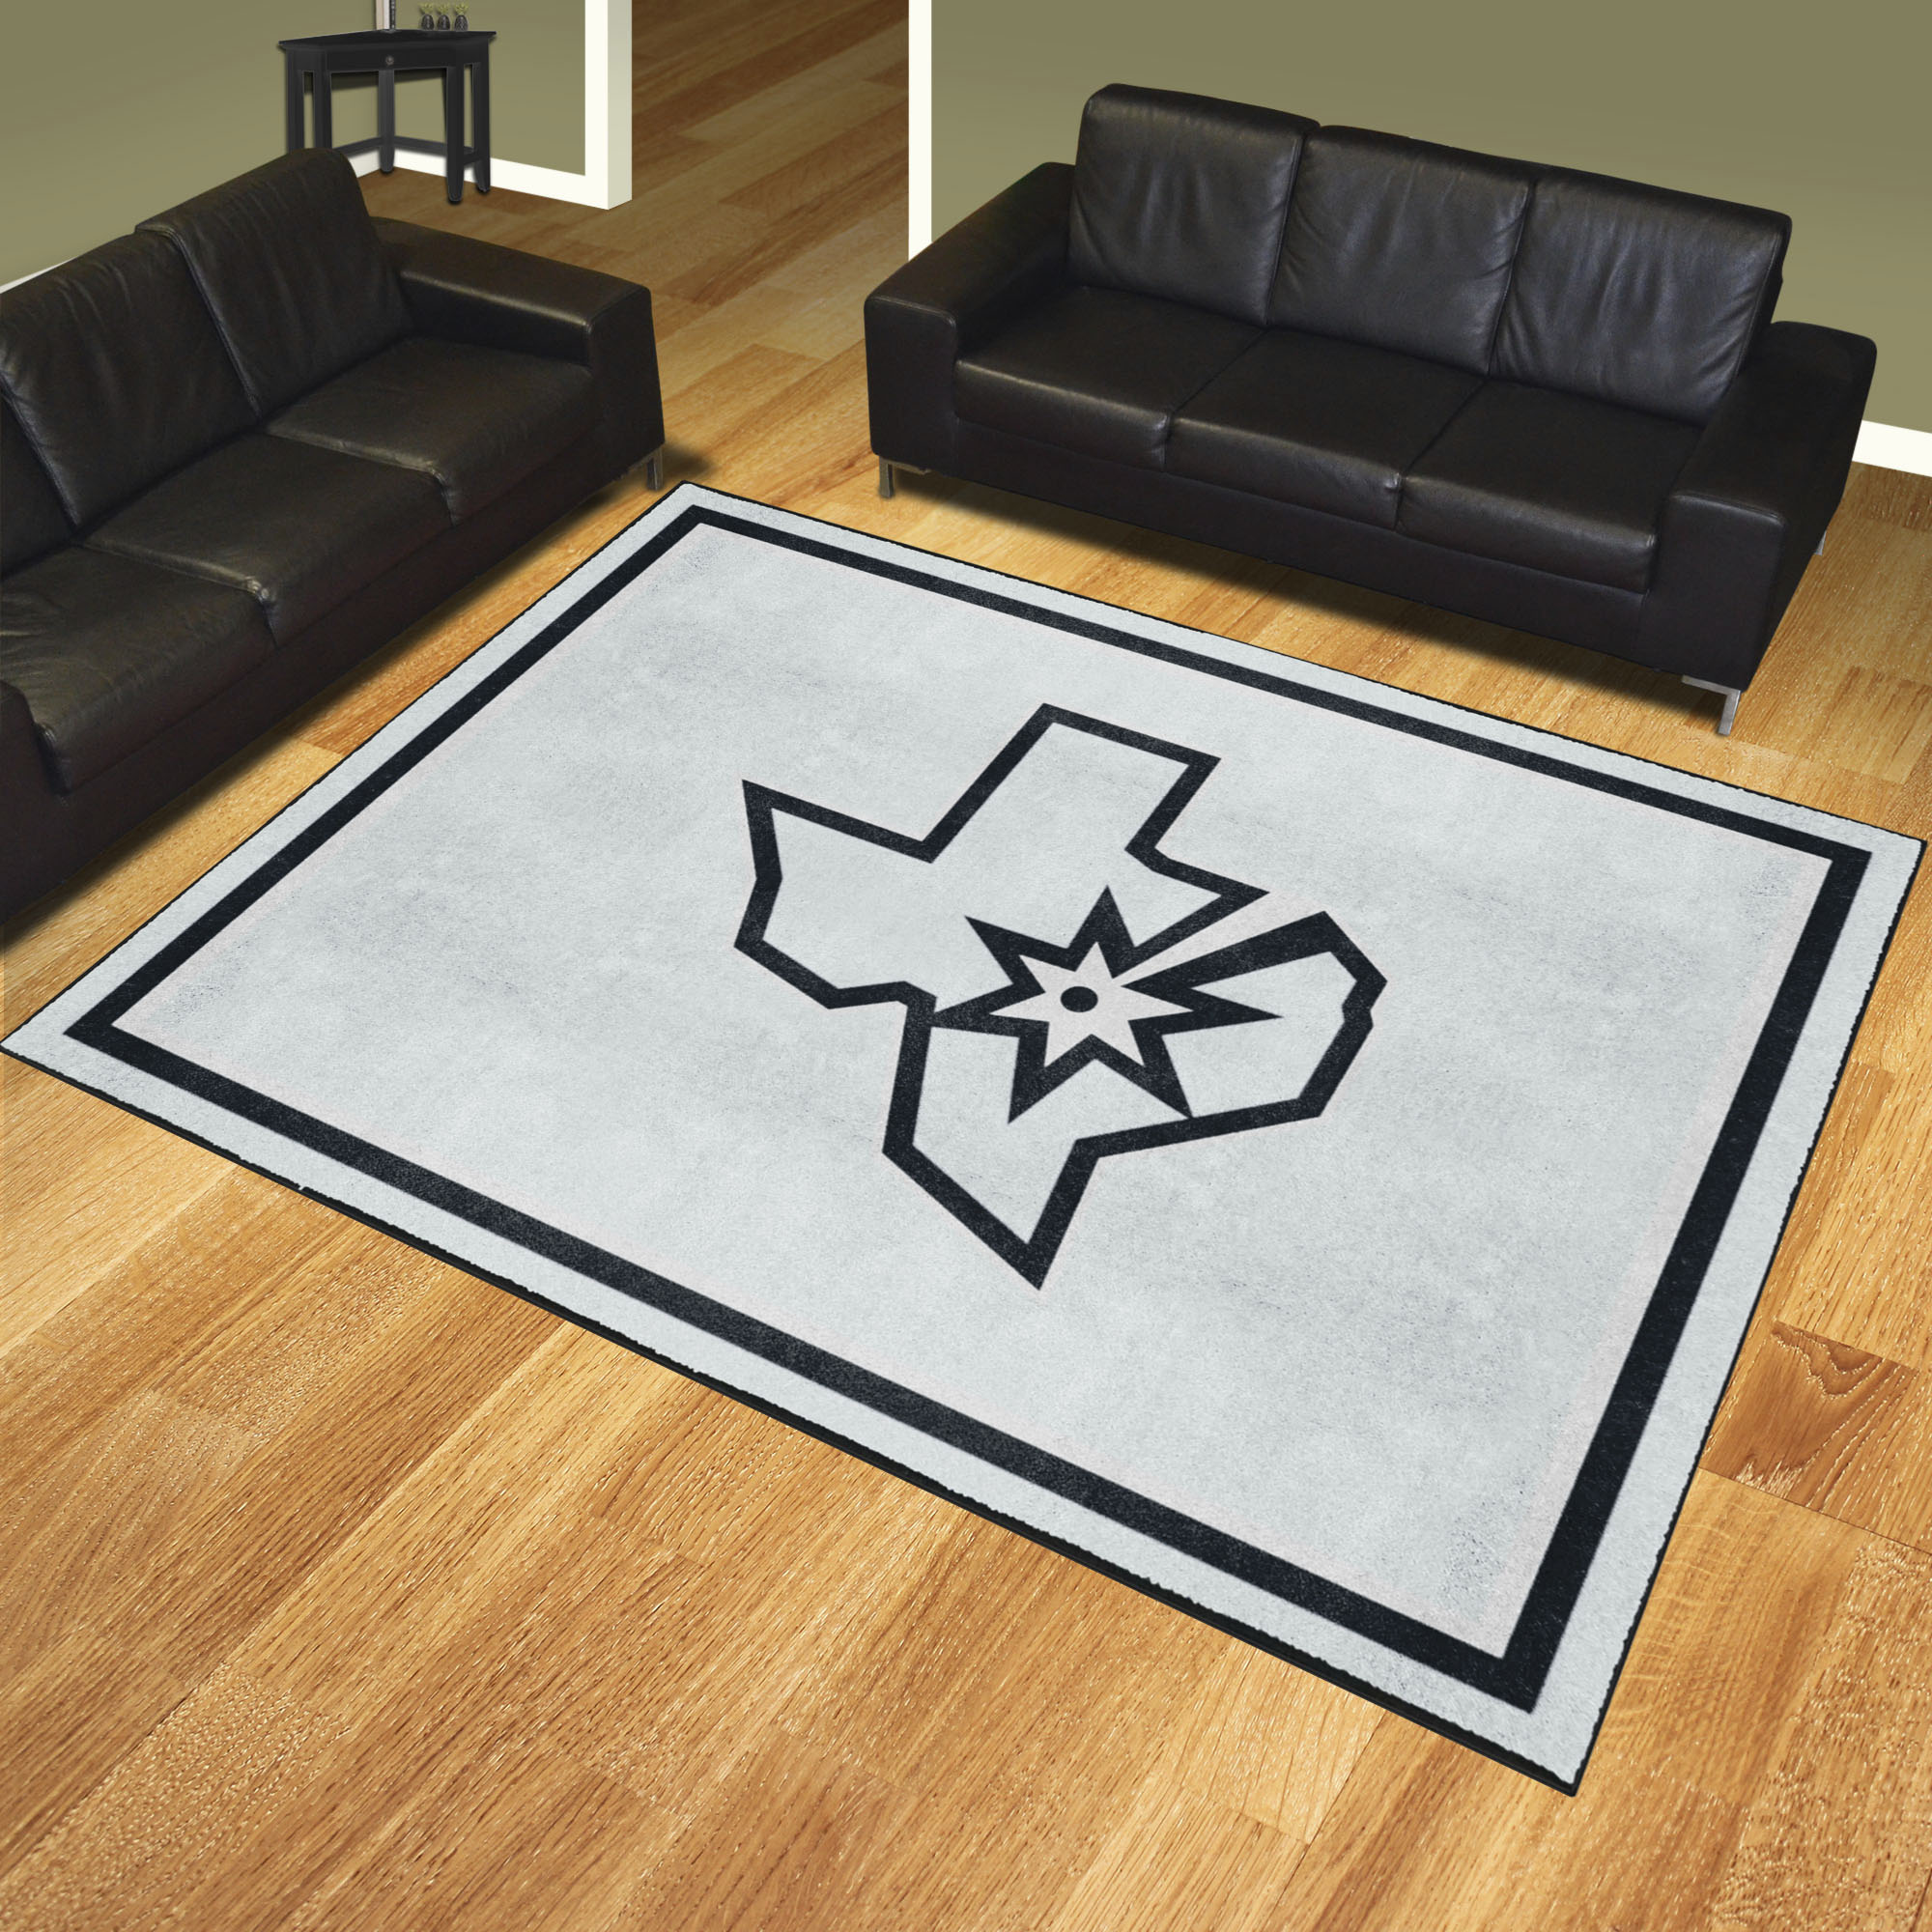 San Antonio Spurs Area Rug - 8' x 10' Alt Logo Nylon